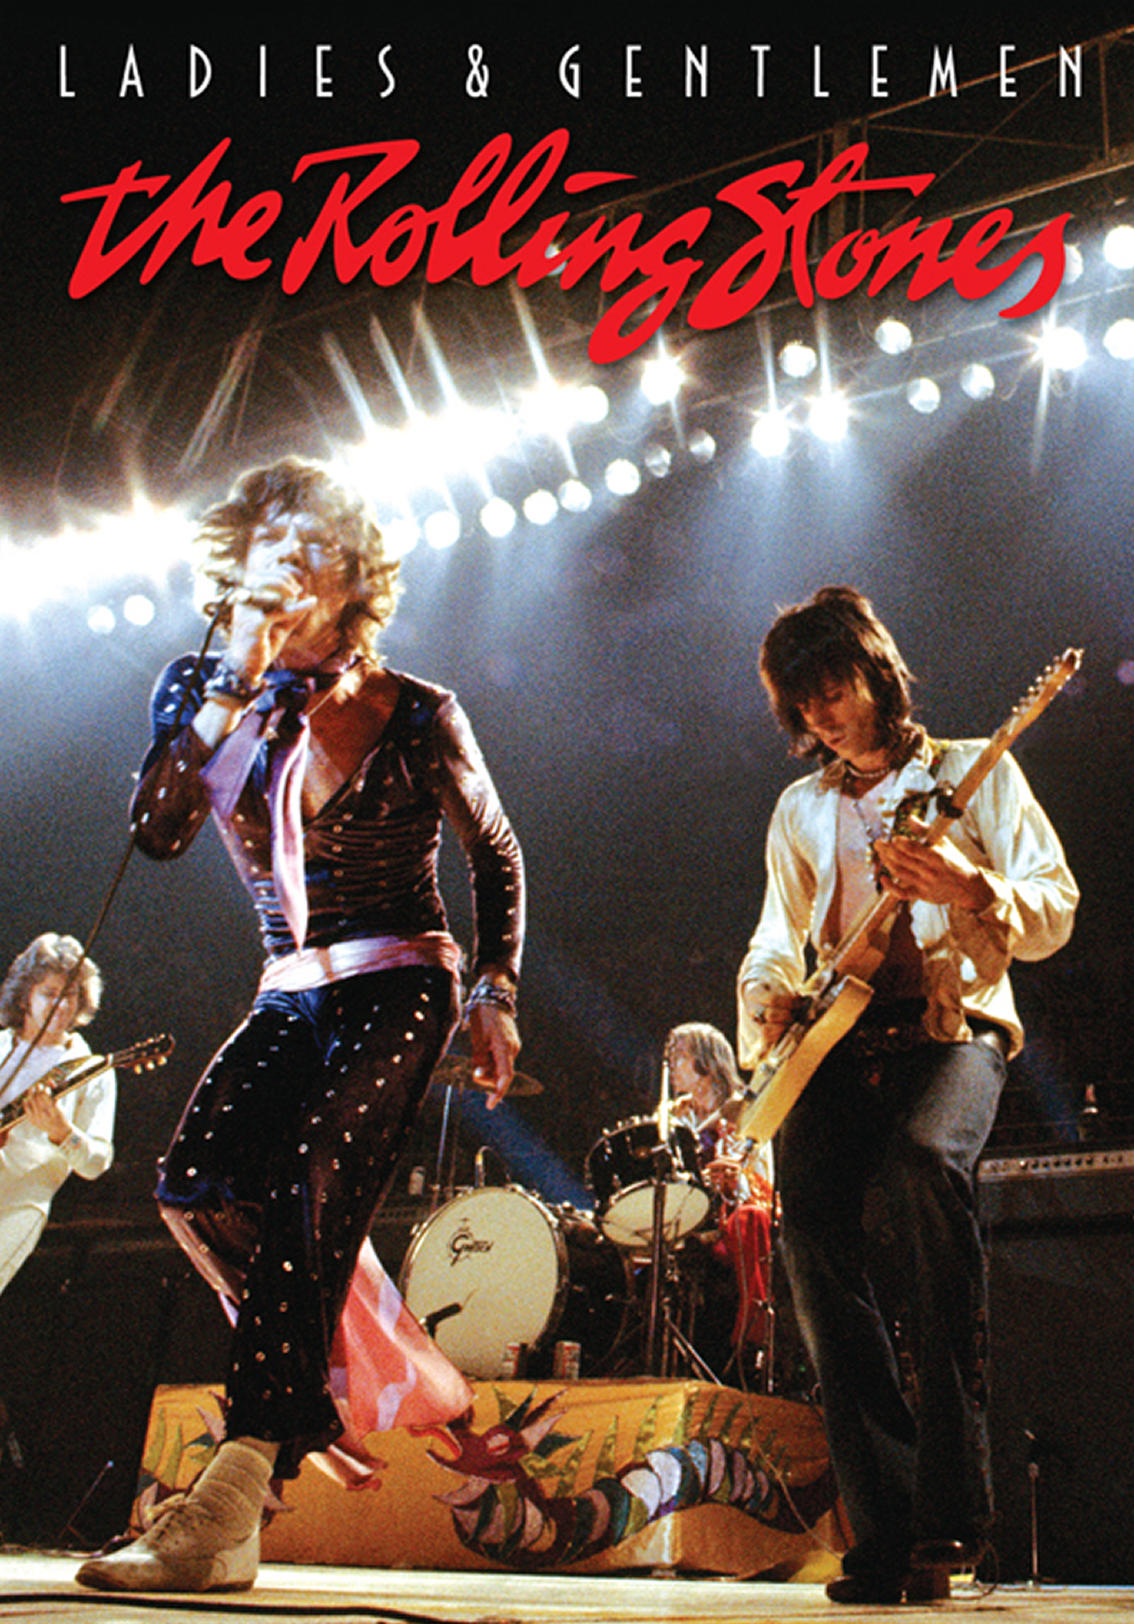 Ladies & Gentlemen: The Rolling Stones (1973) | Kaleidescape Movie Store